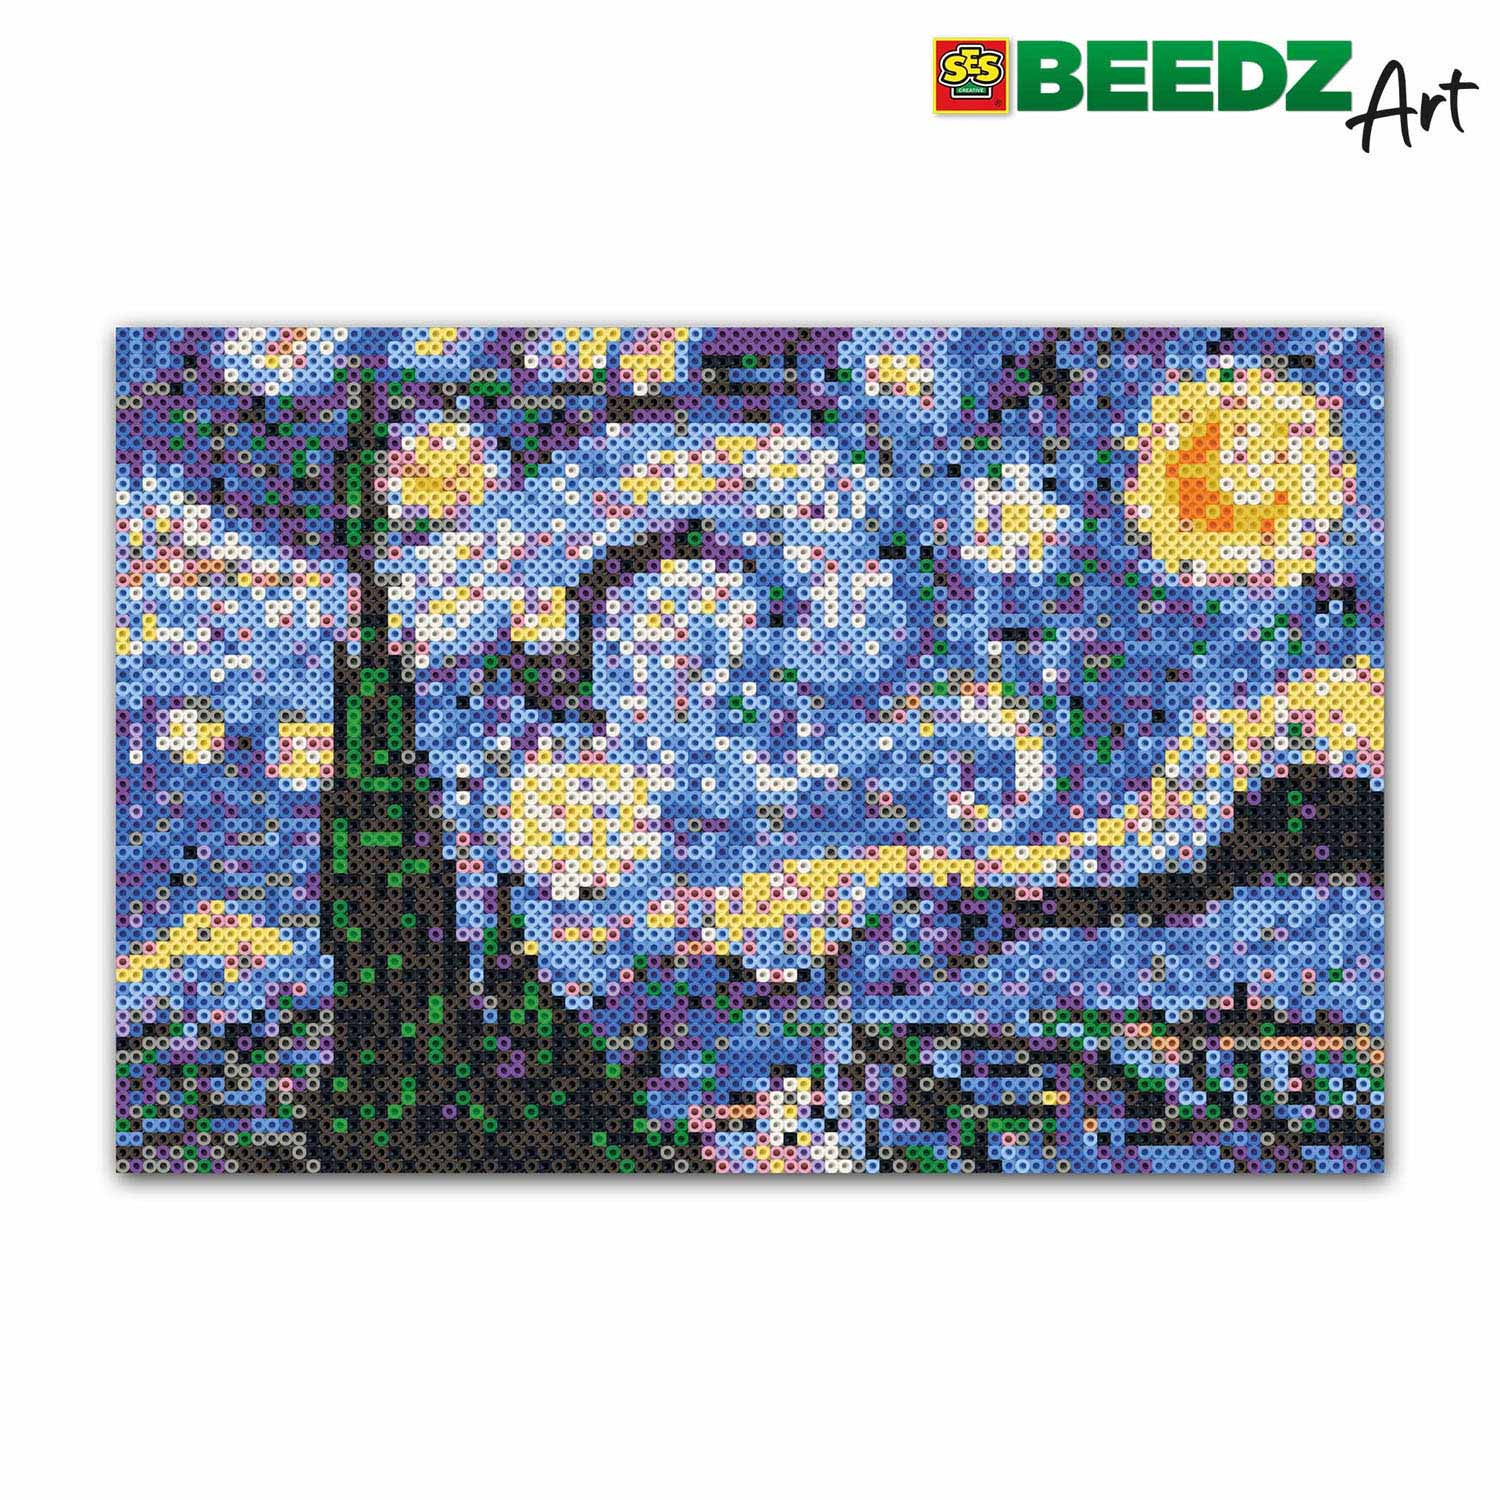 SES Beedz Art - Van Gogh, De Sterrennacht